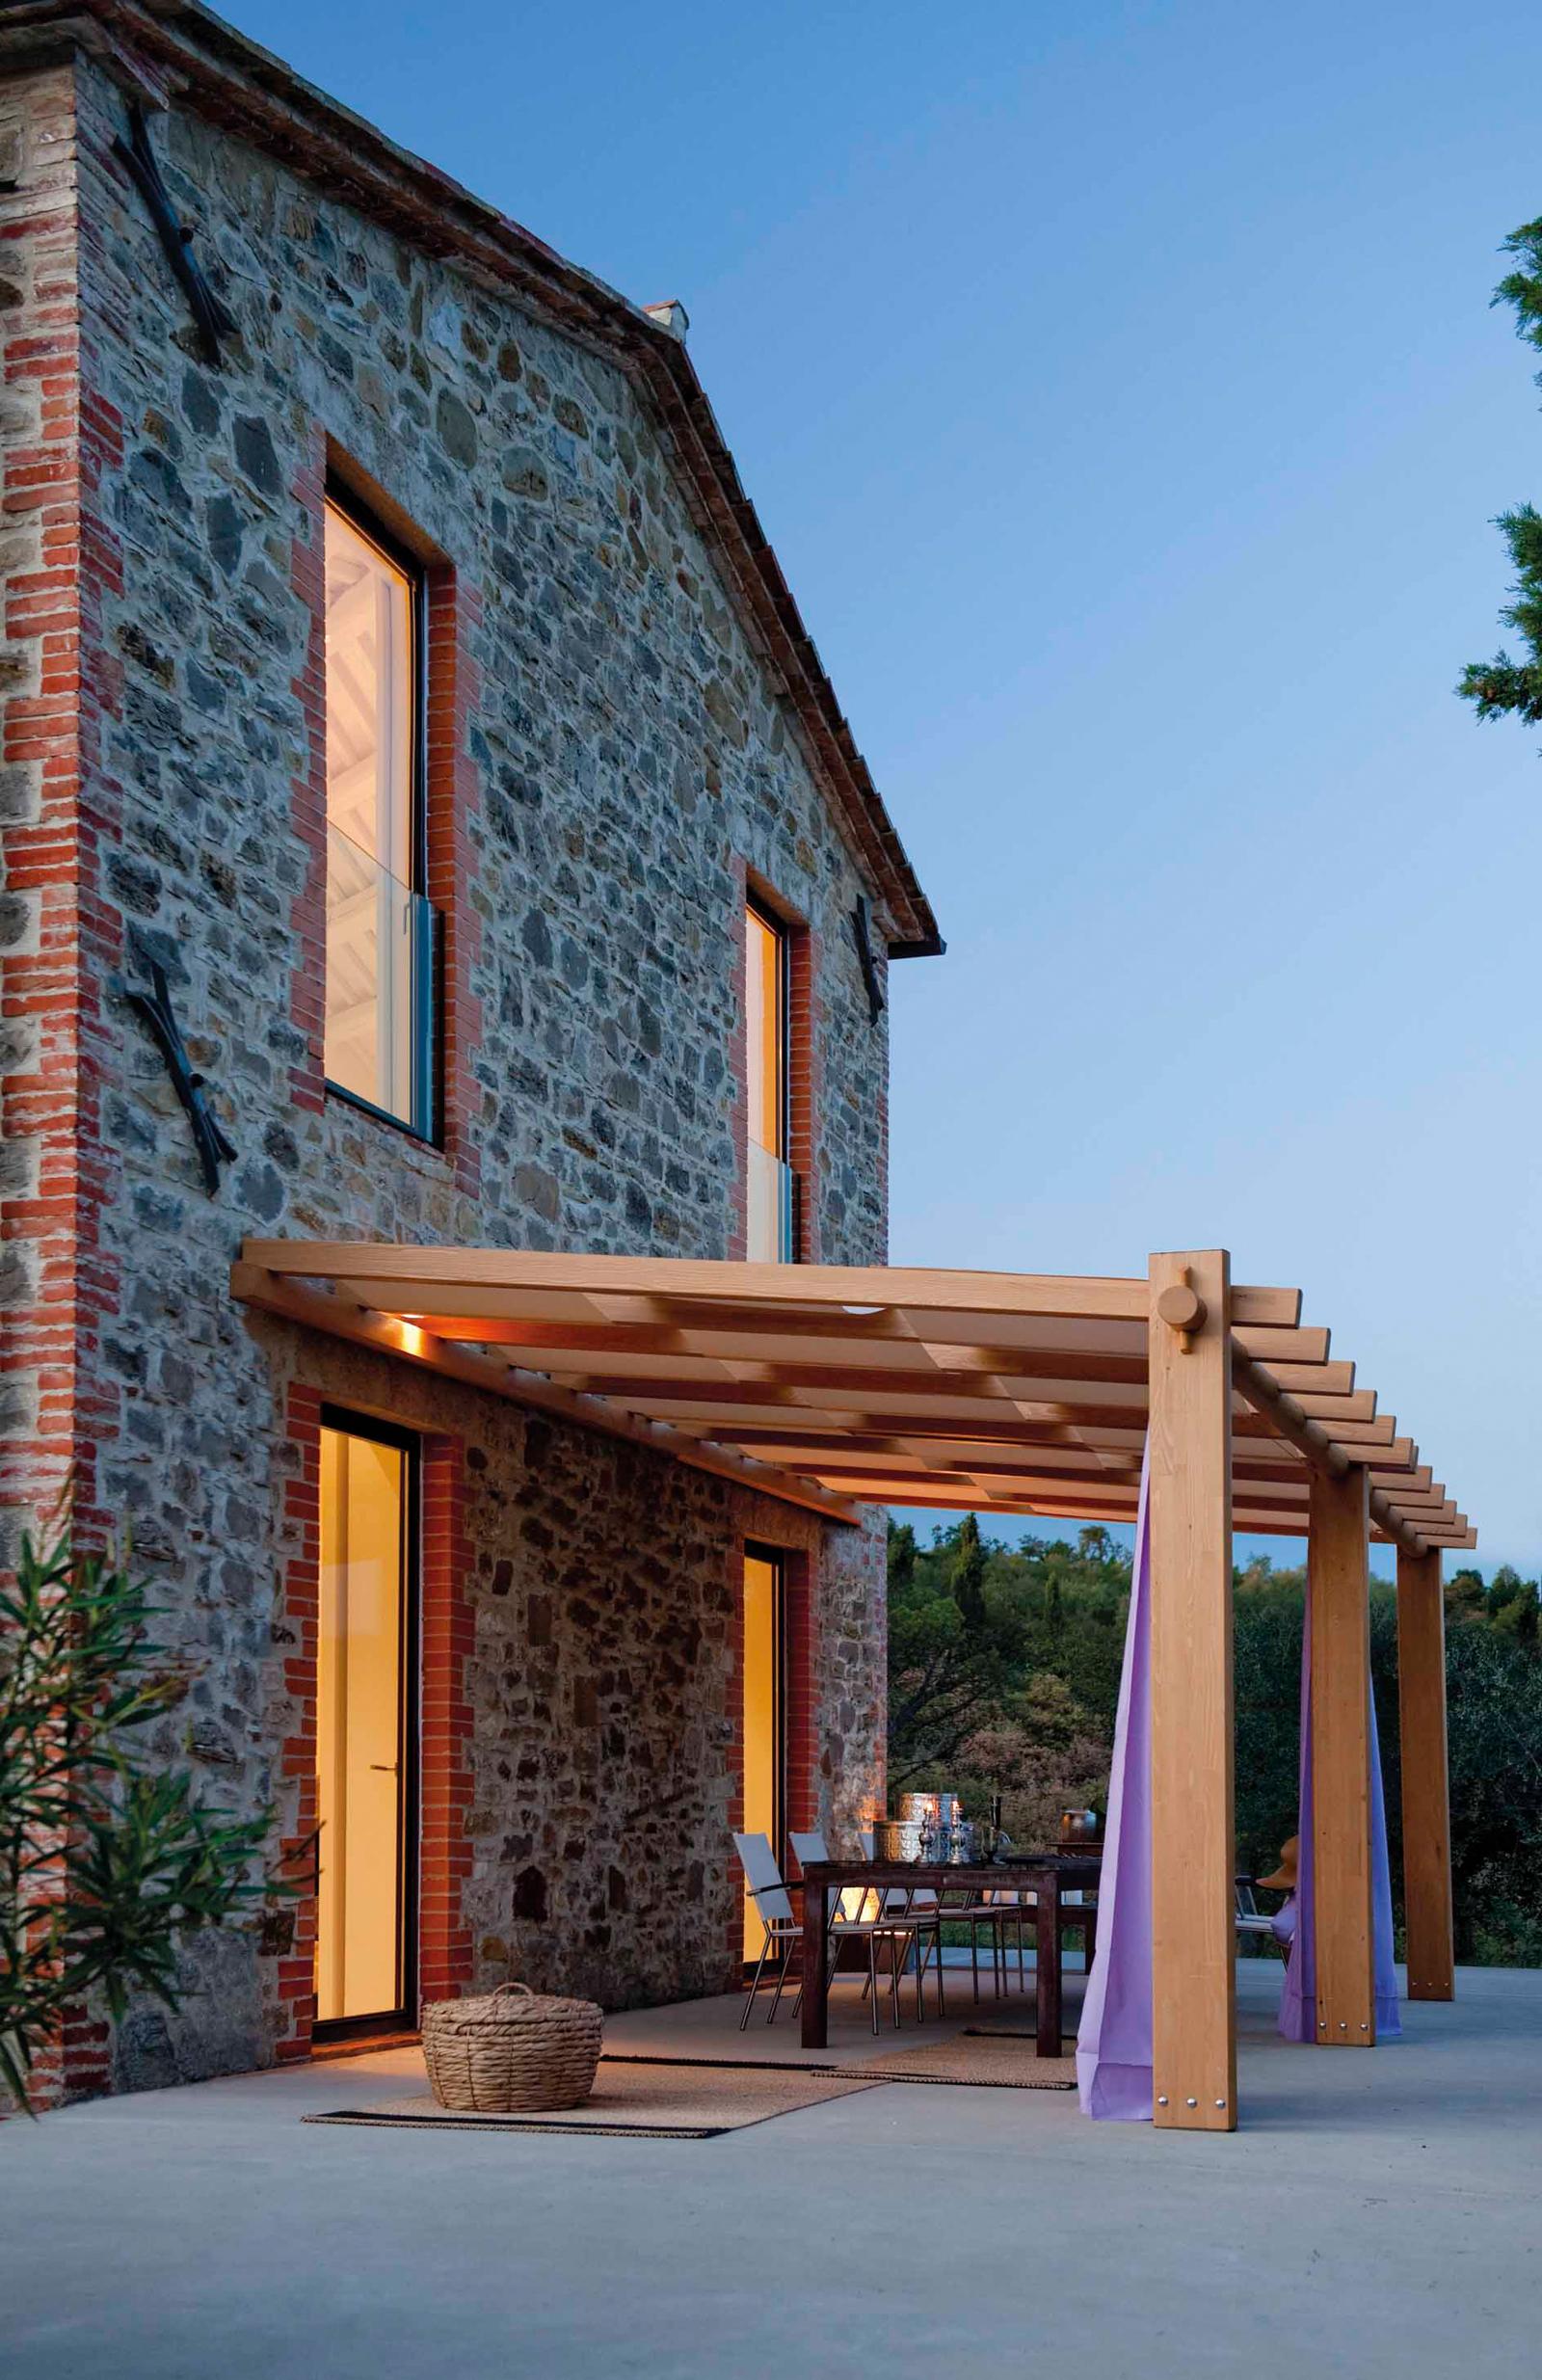 Holzkonstruktion als Überdachung der Terrasse #terrasse #überdachung #terrassengestaltung ©Pircher